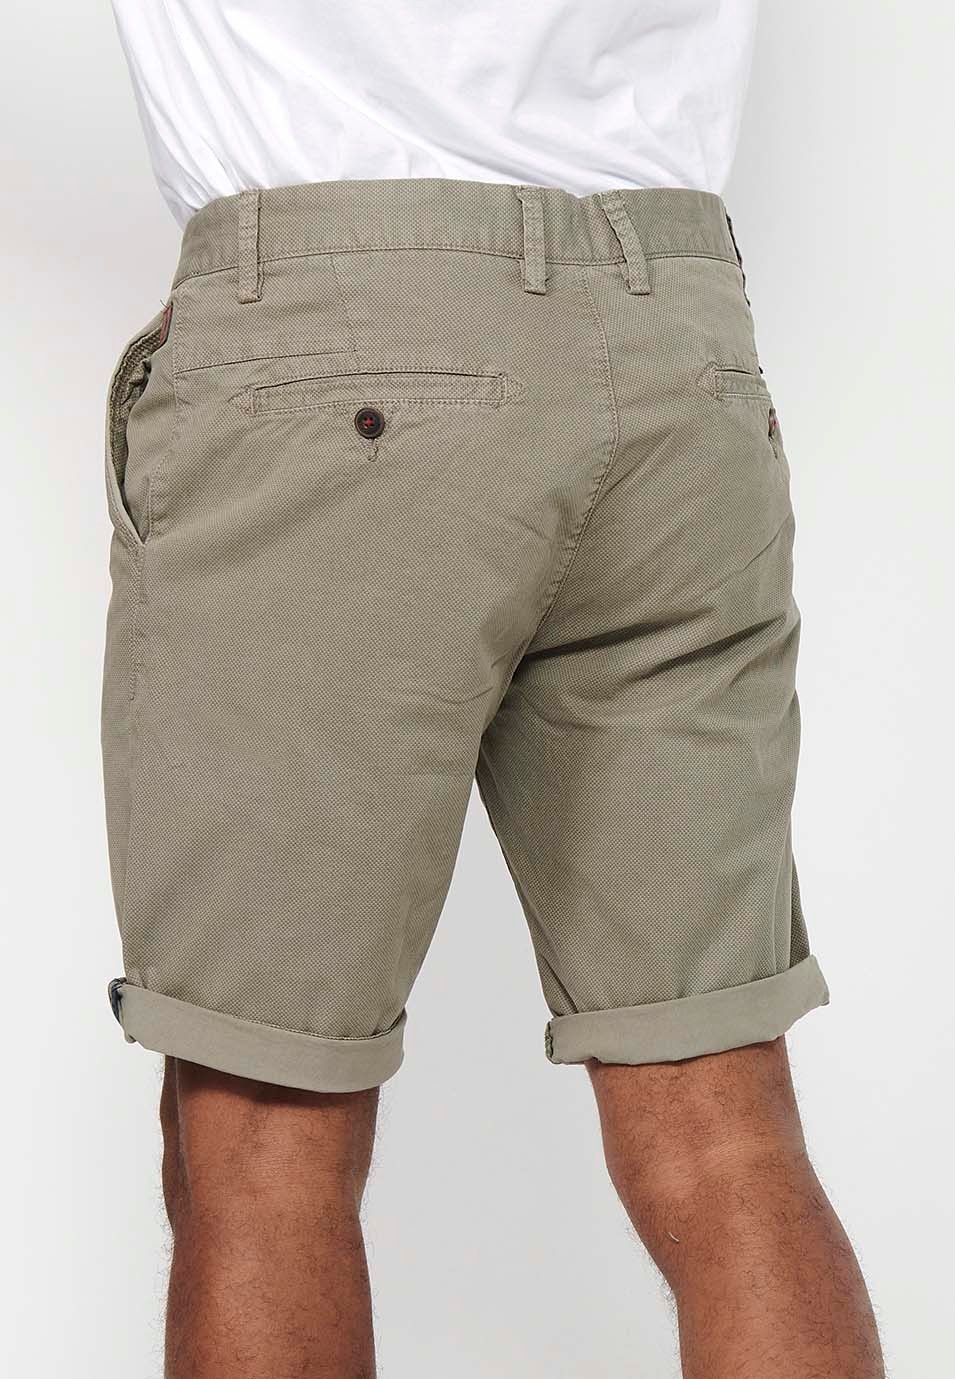 Herren-Bermuda-Chino-Shorts mit Umschlag, Reißverschluss vorne und Knopfverschluss sowie vier Taschen in Nerzfarbe 9